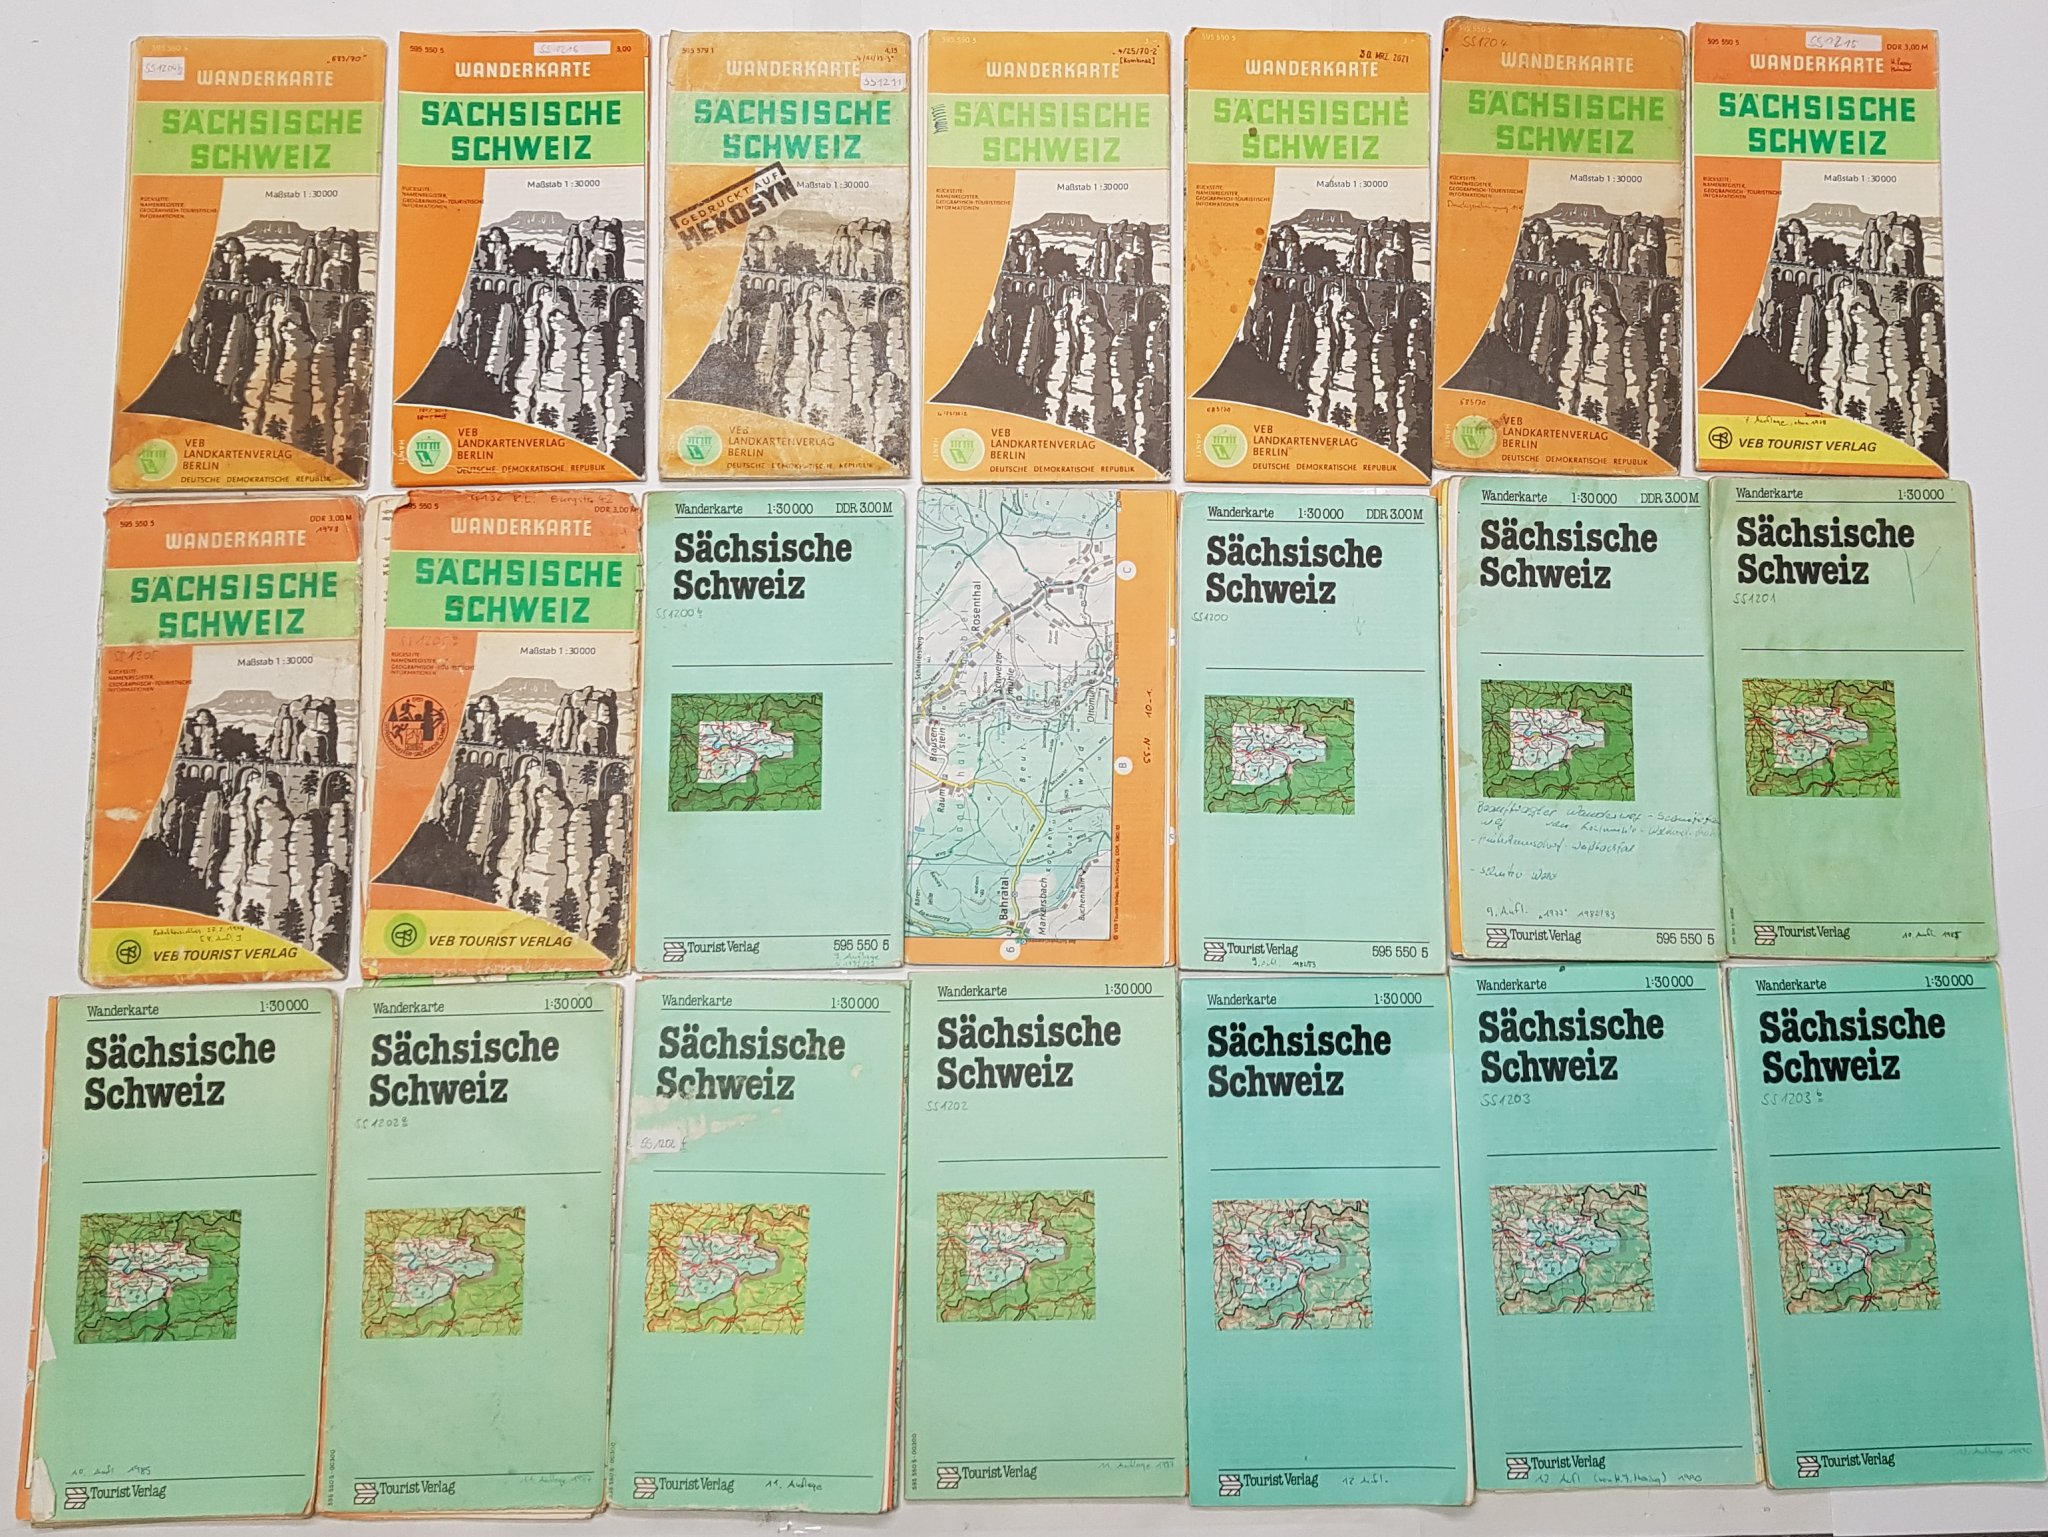 Ach, die alten DDR-Karten ...